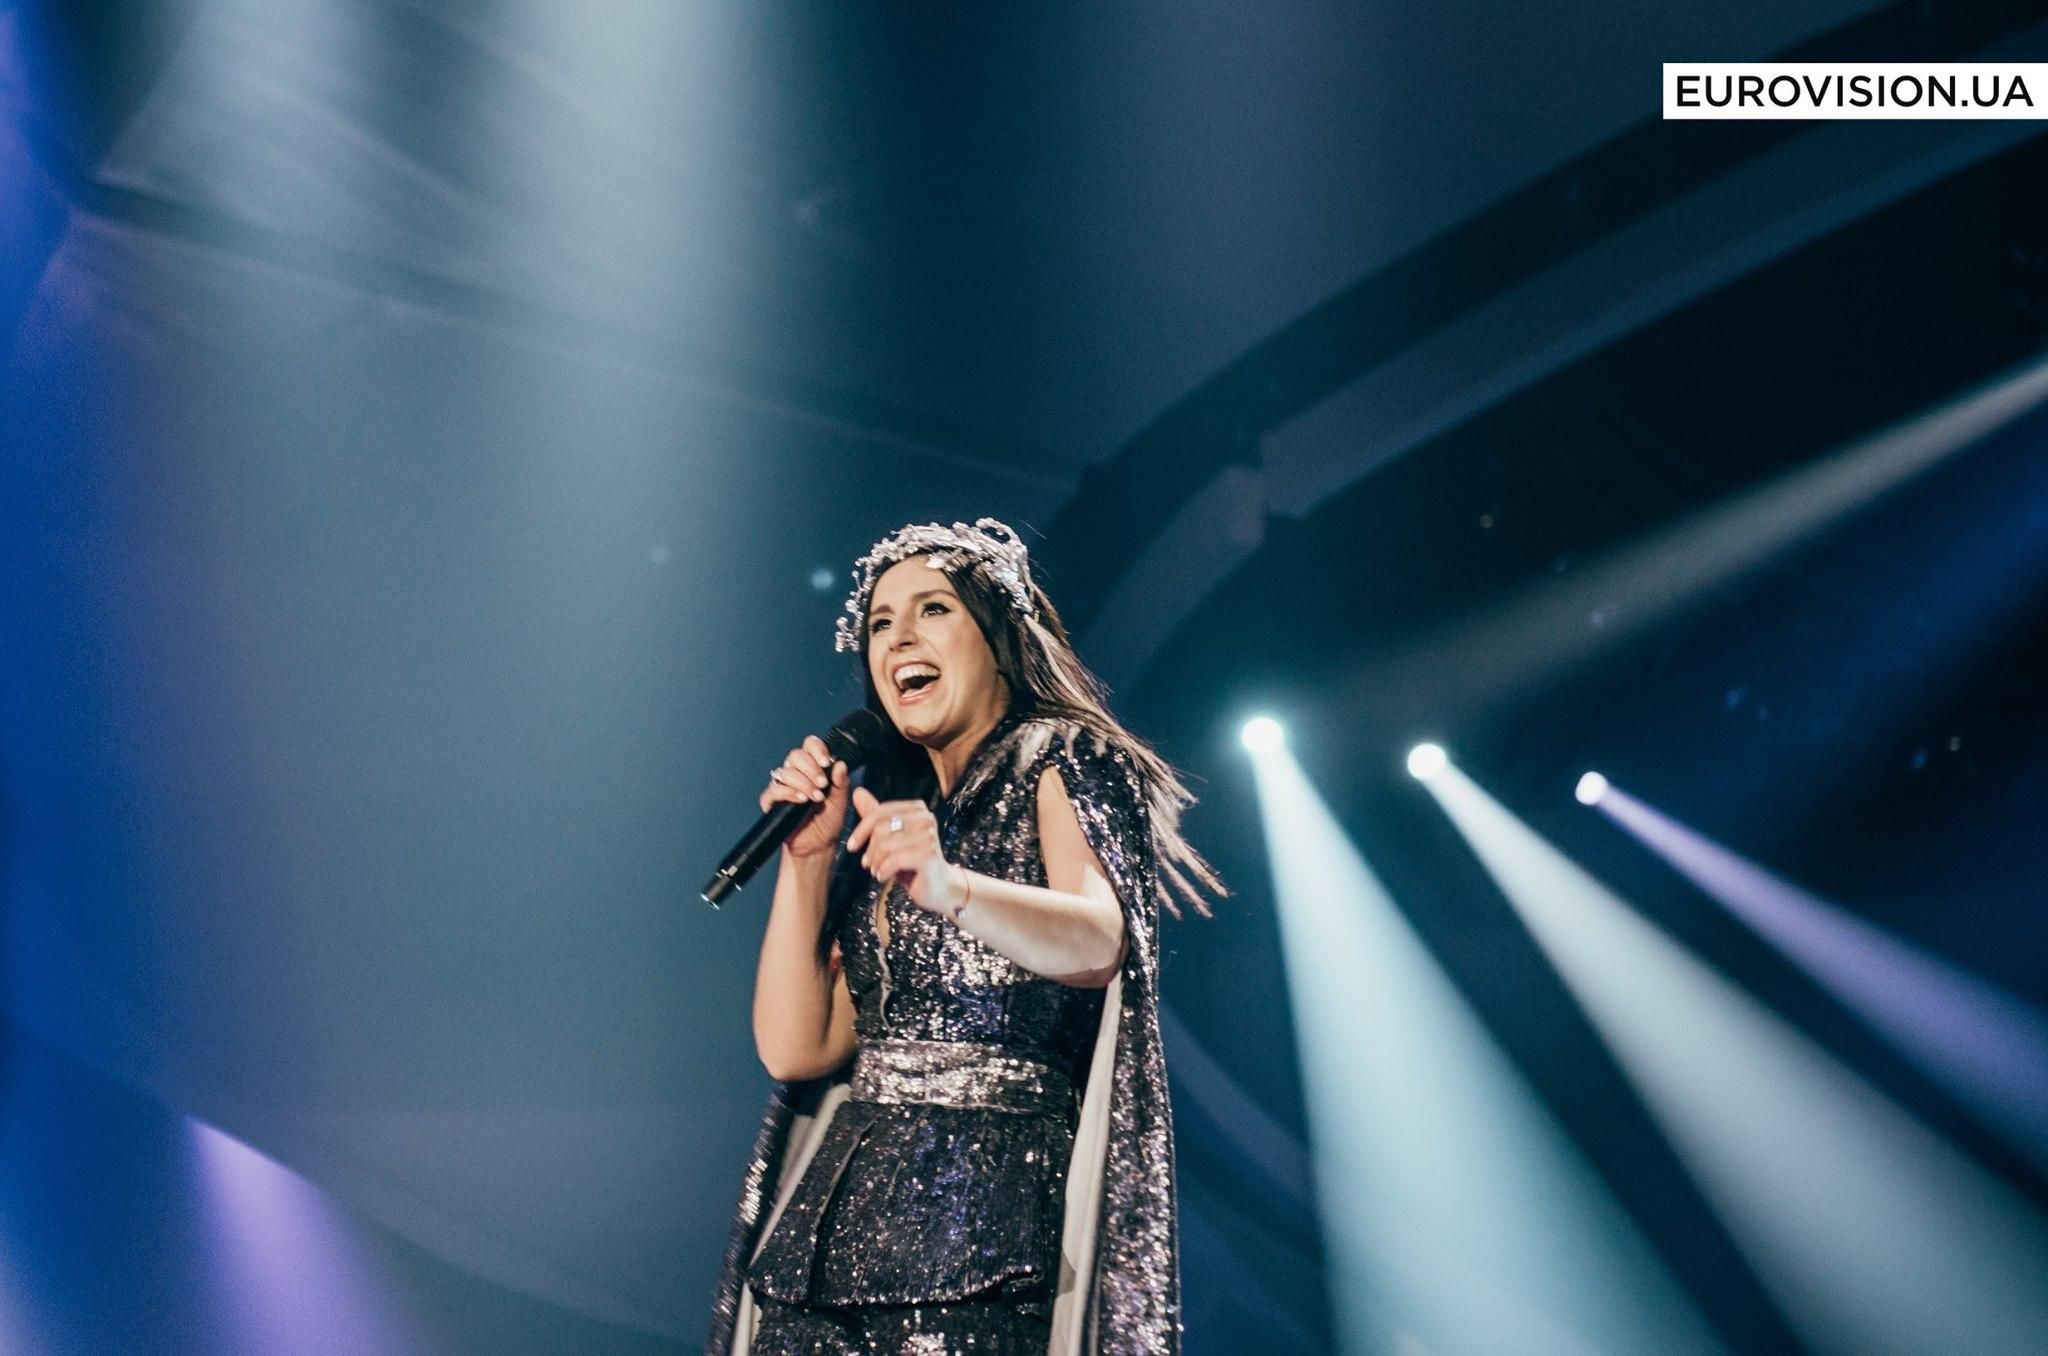 Финал Евровидения 2017: Джамала спела новую песню